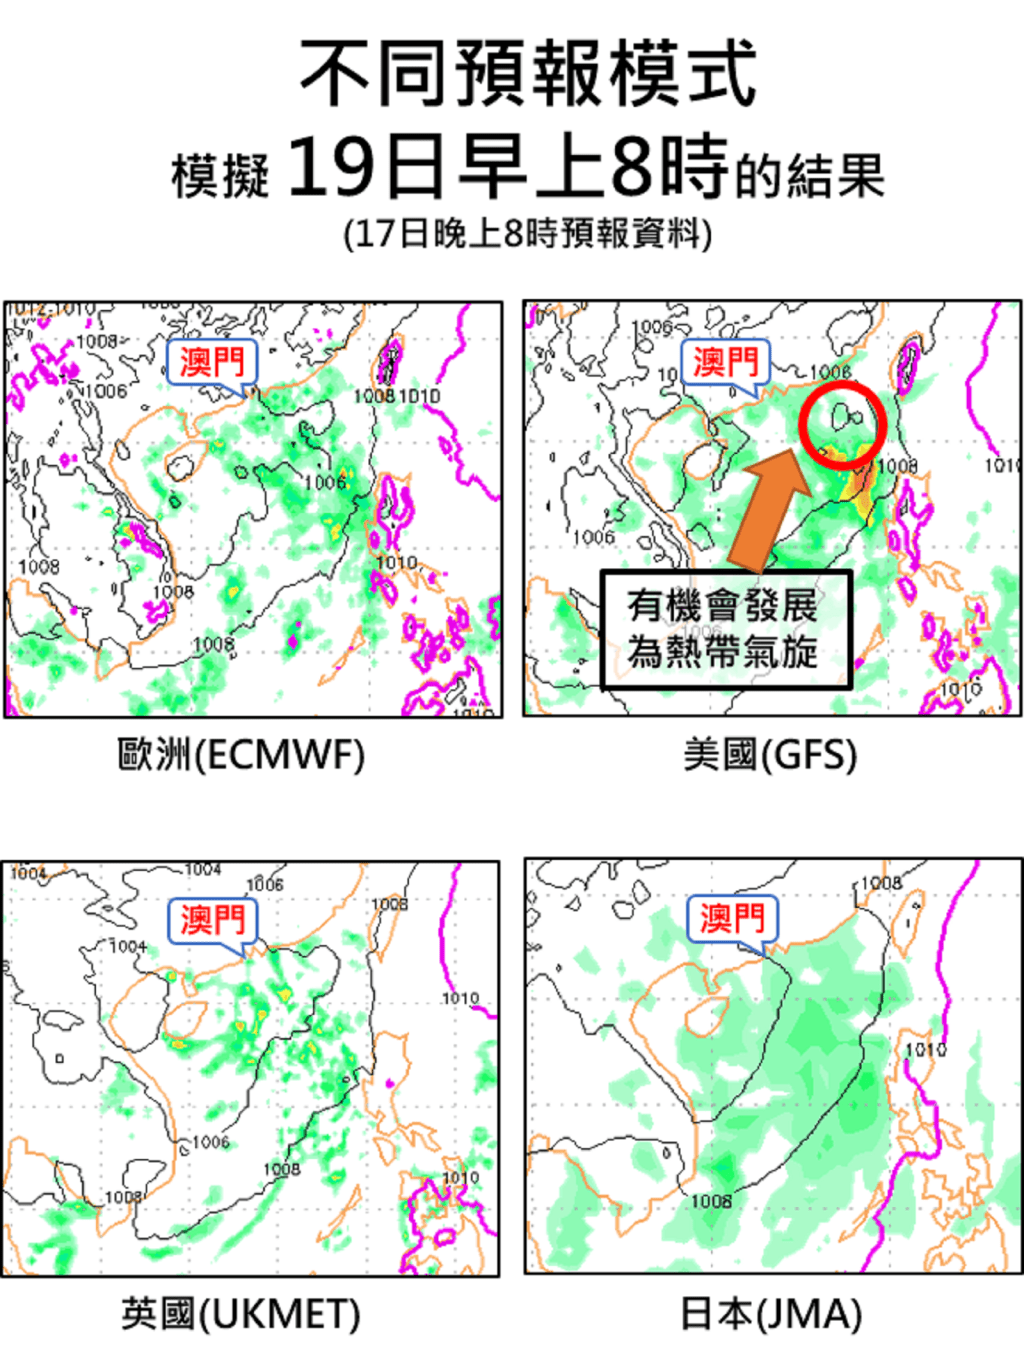 ECMWF(左上)、GFS(右上)、UKMET(左下)及JMA(右下) 海平面氣壓及雨量預報圖。澳門氣象局圖片